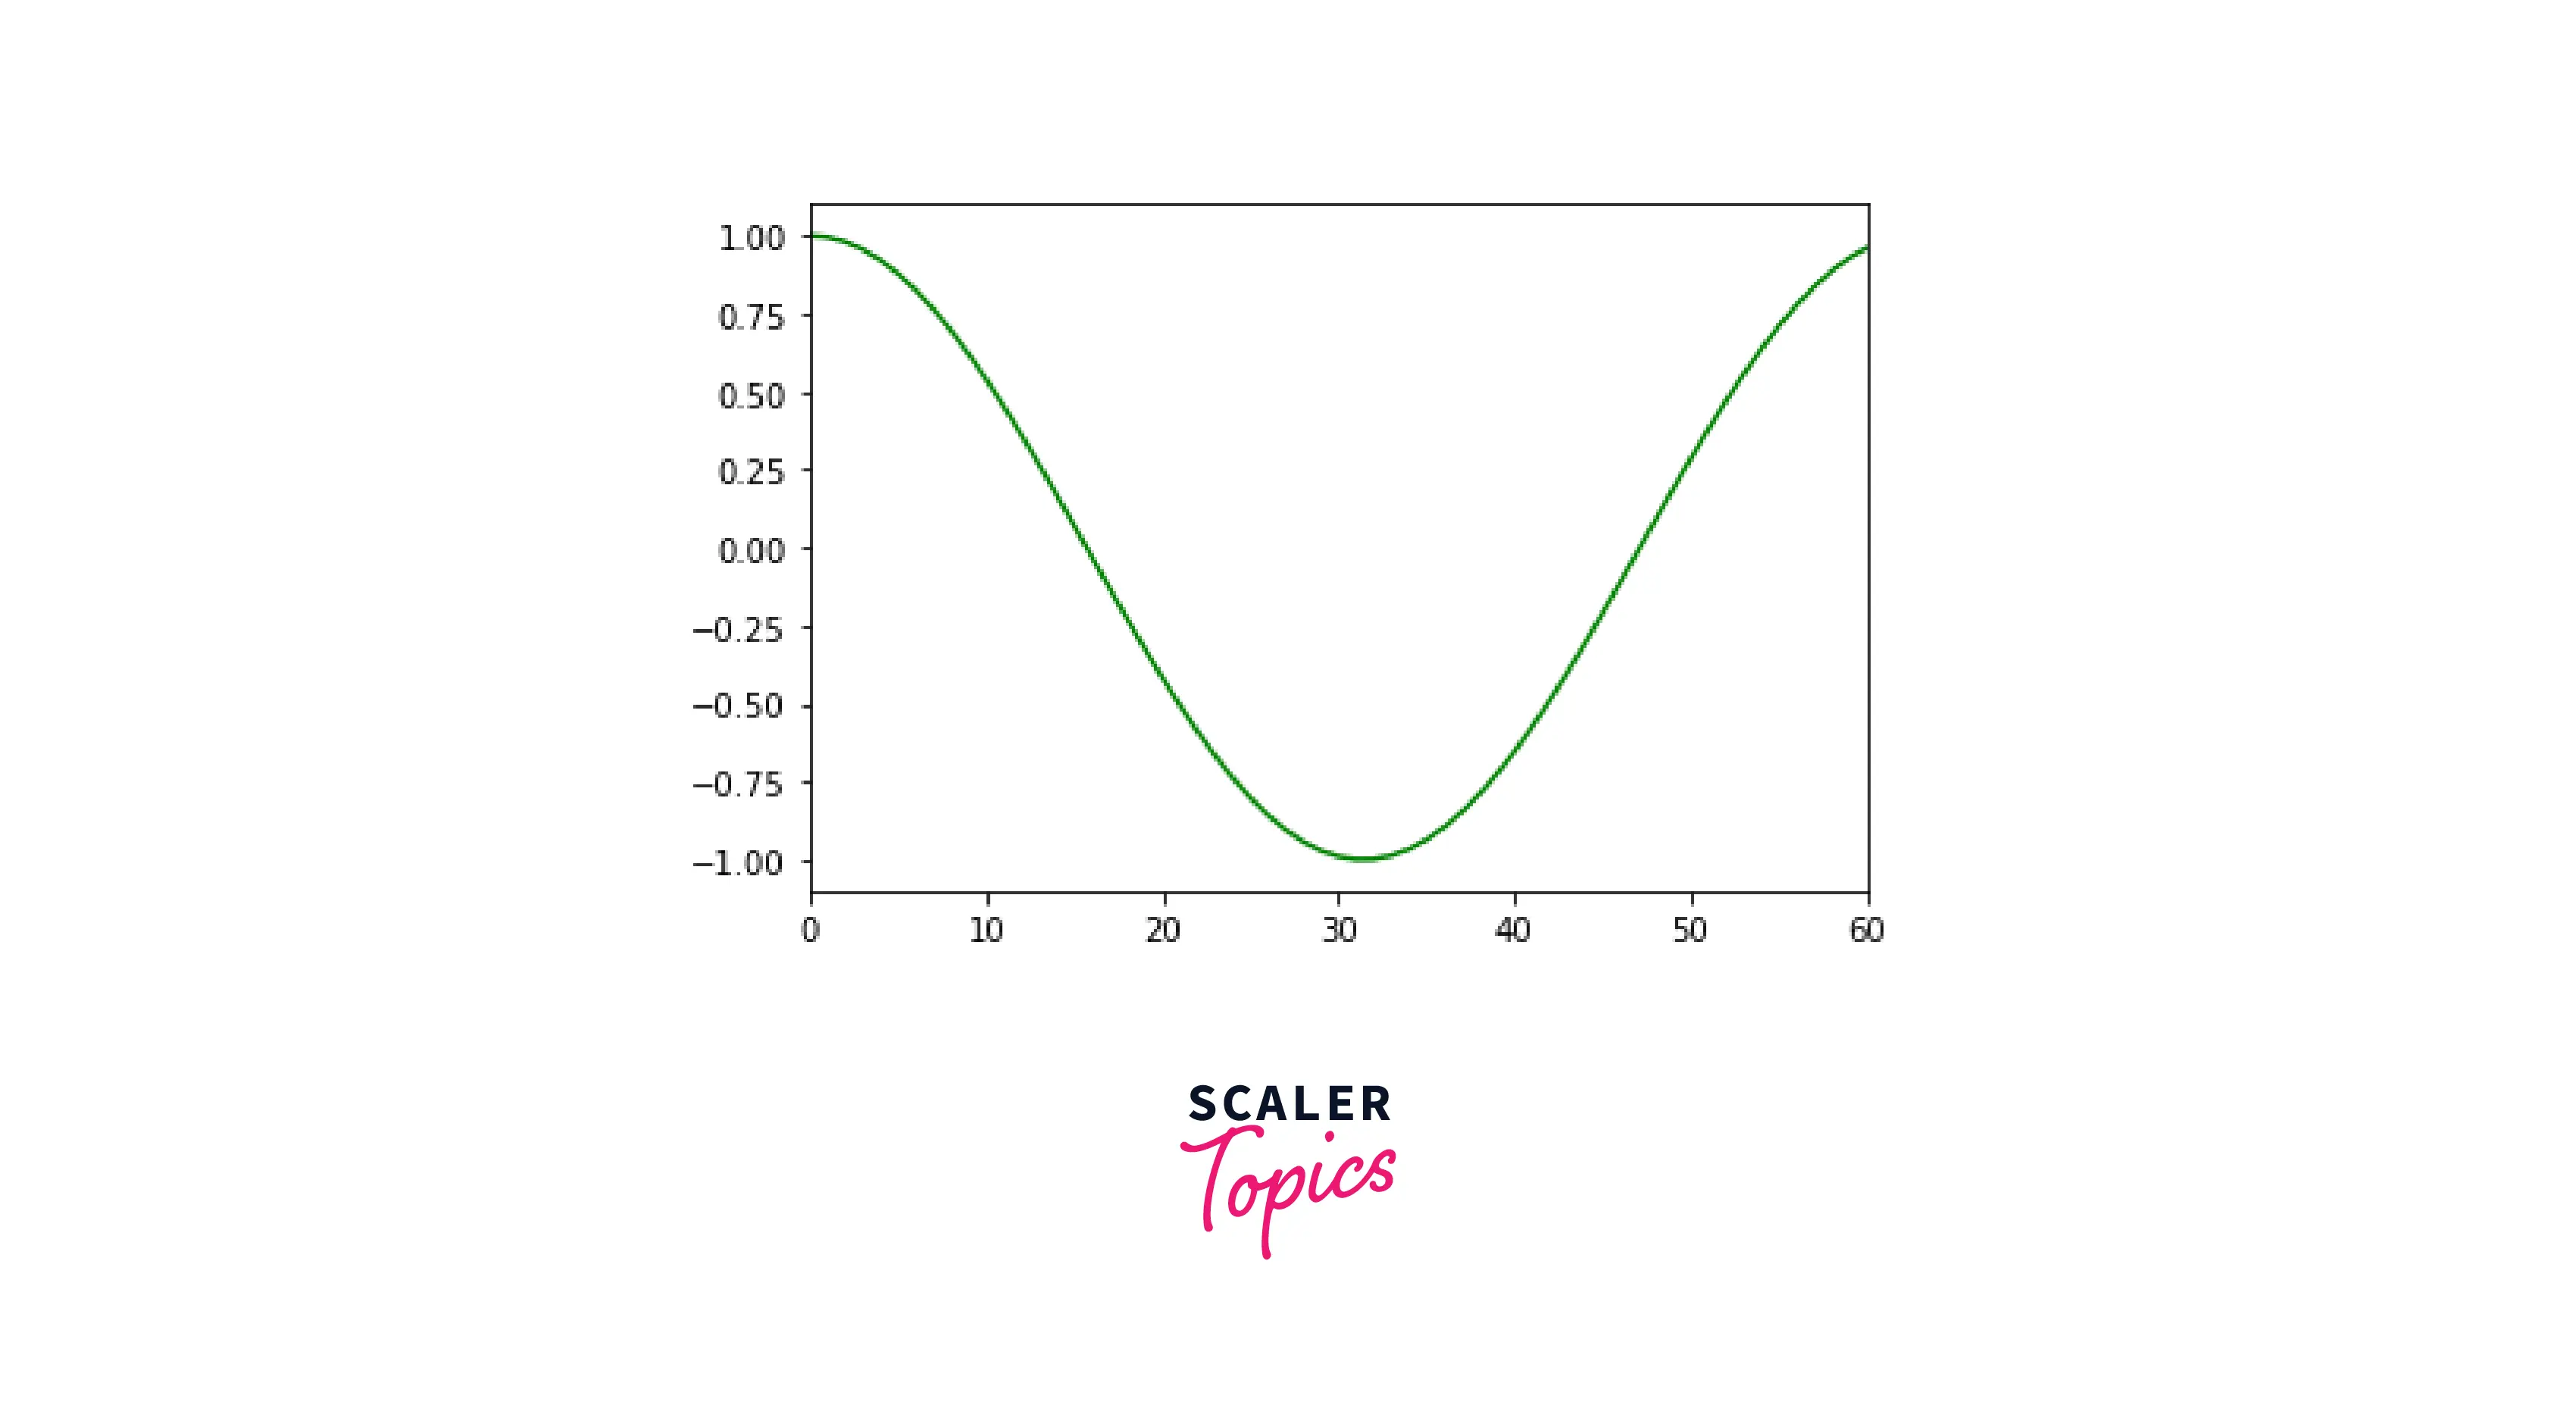 plot-of-cosine-curve-after-range-change